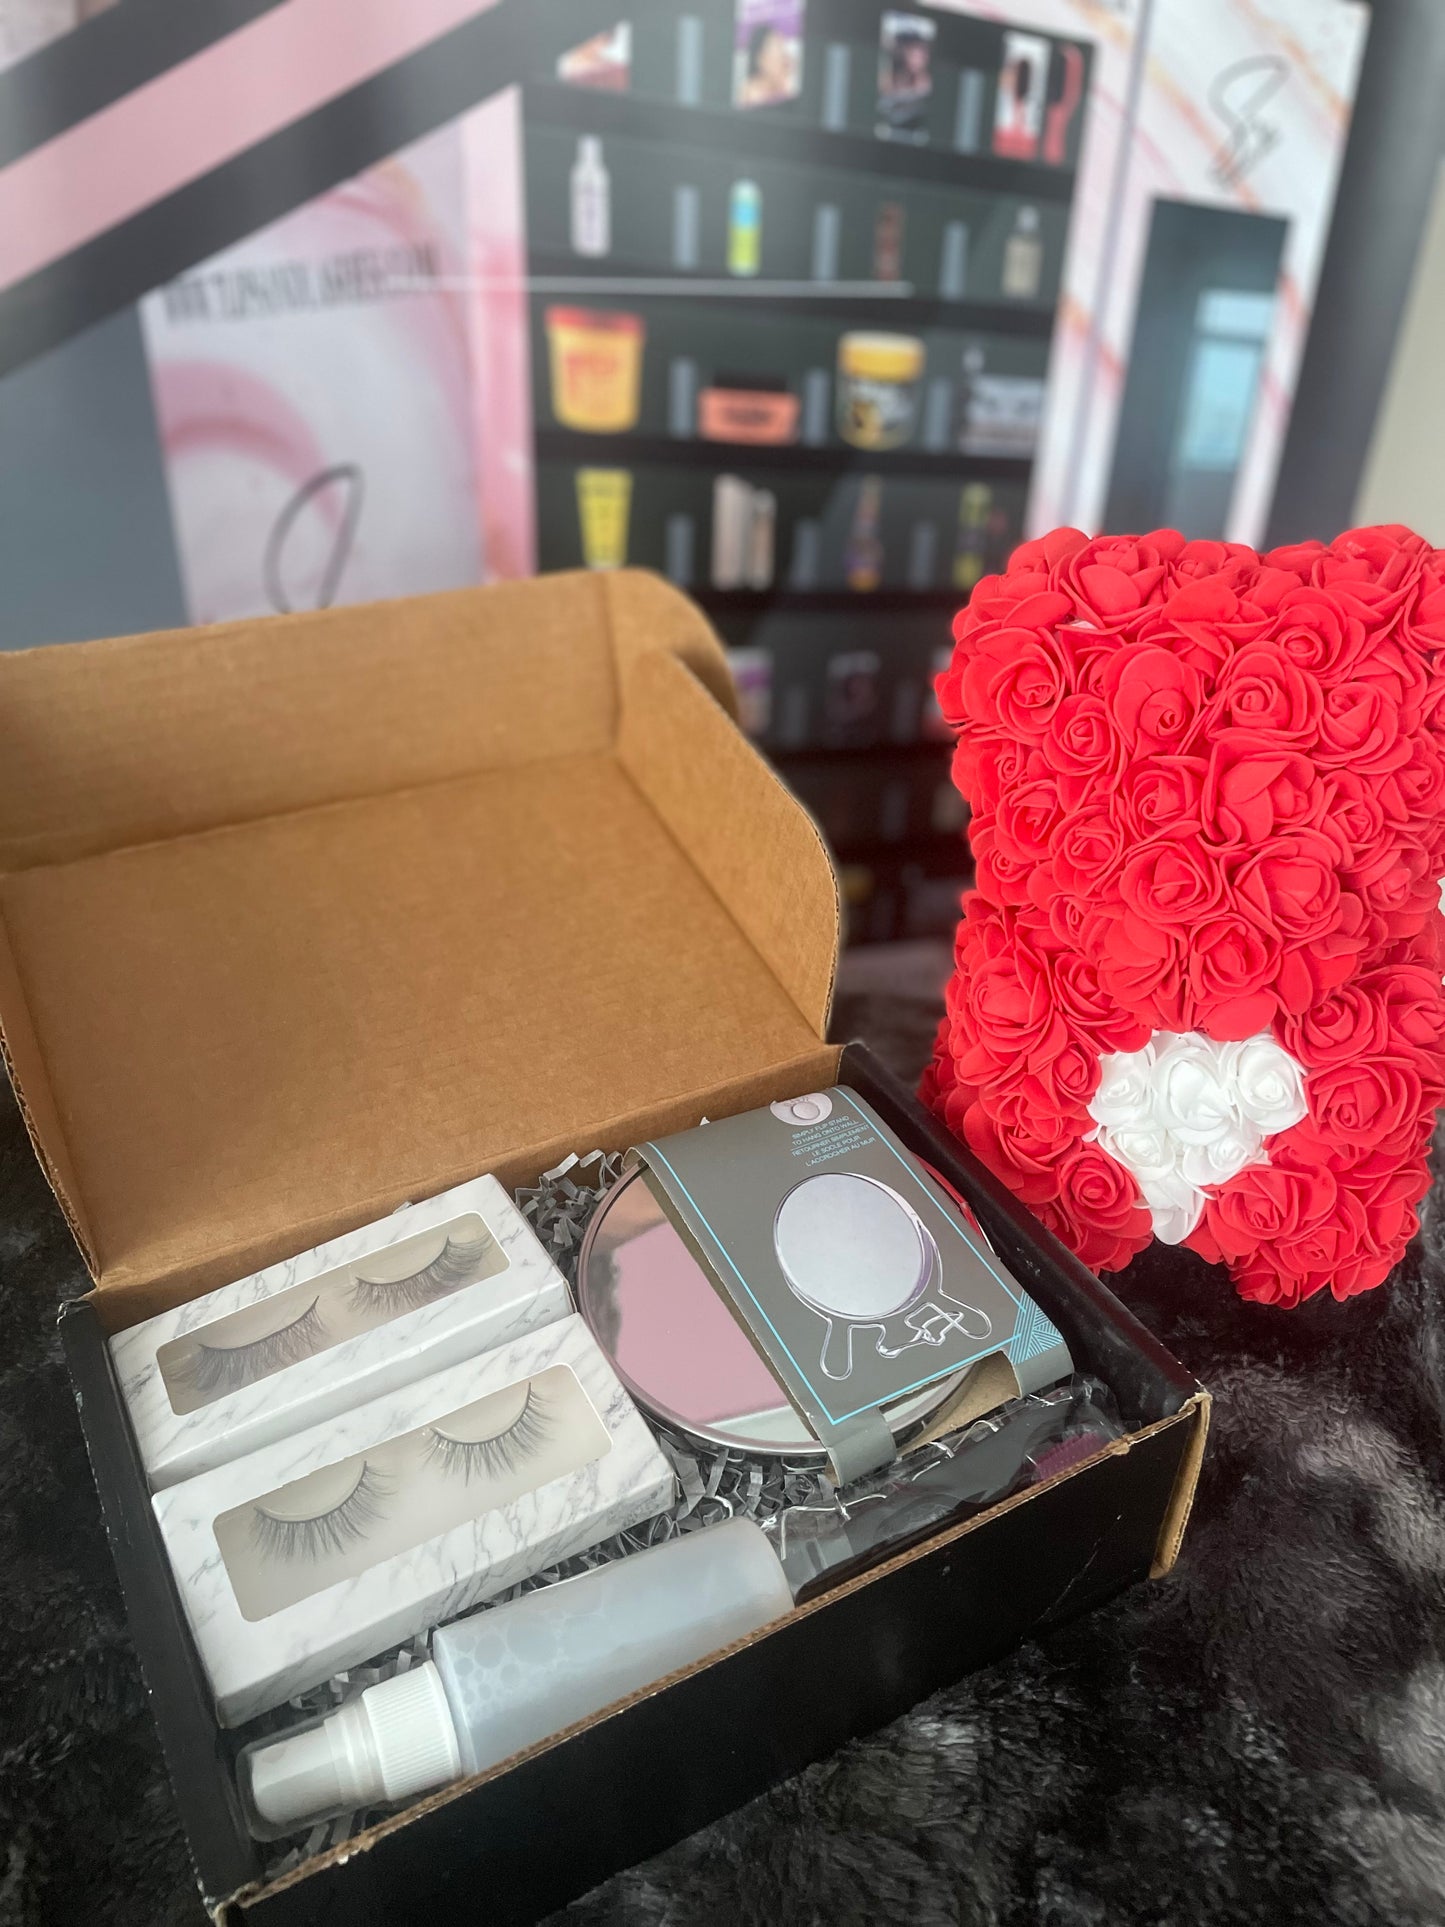 New Beauty Bundle Box!